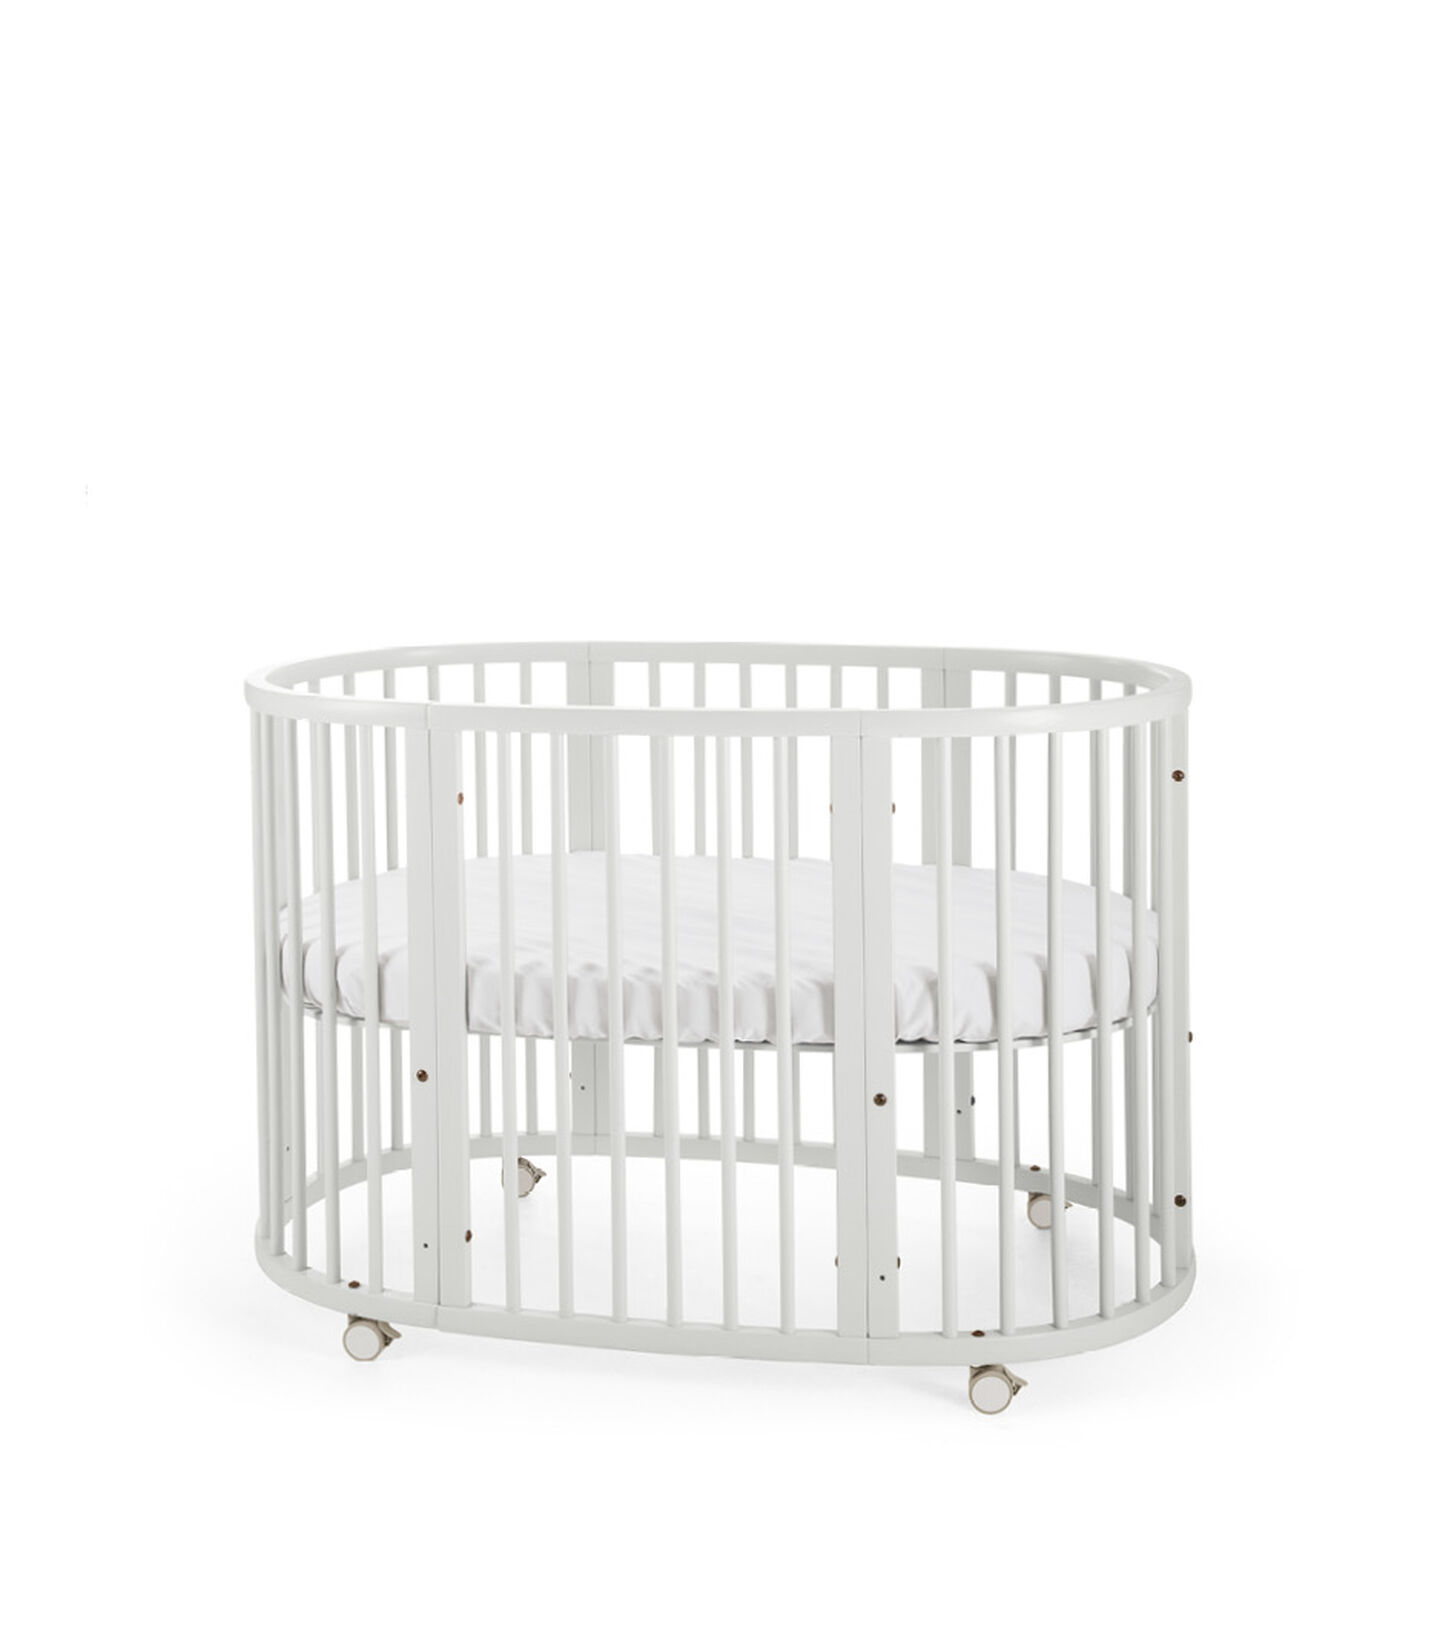 Stokke® Sleepi™ Crib/Bed White, White, mainview view 1